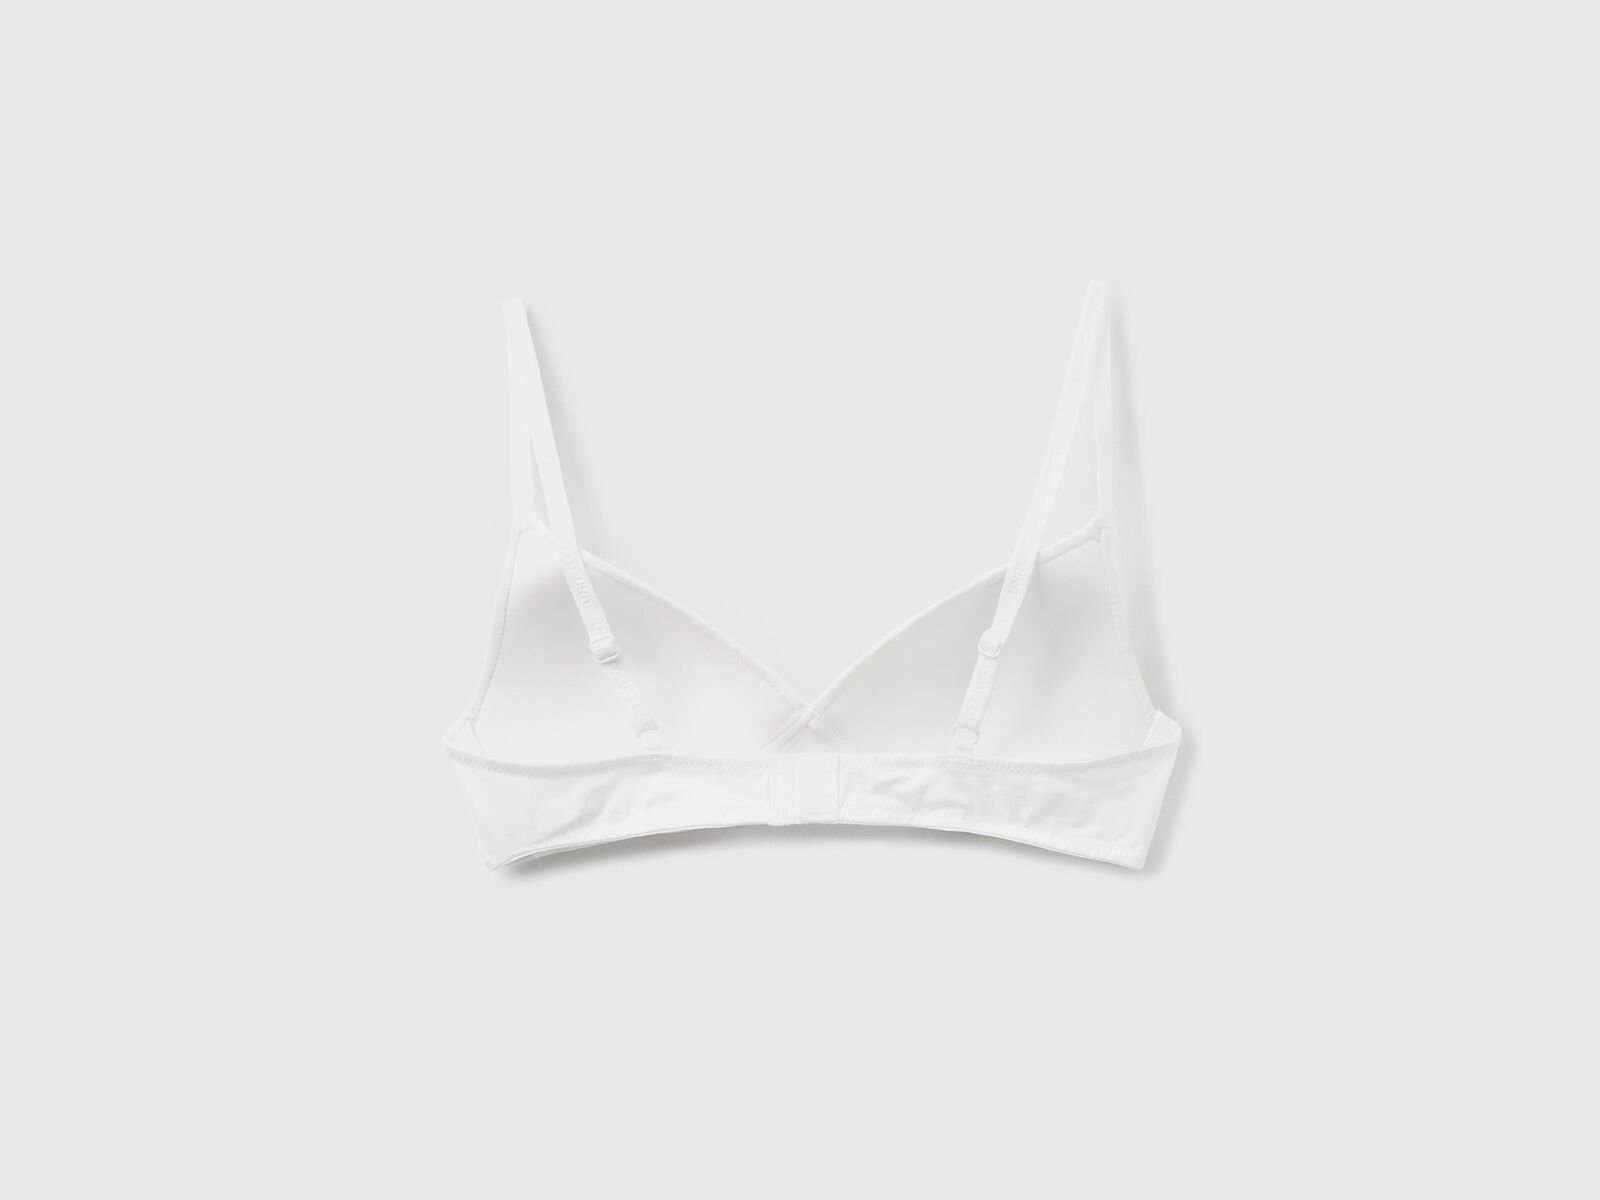 Triangle bra in organic cotton - White